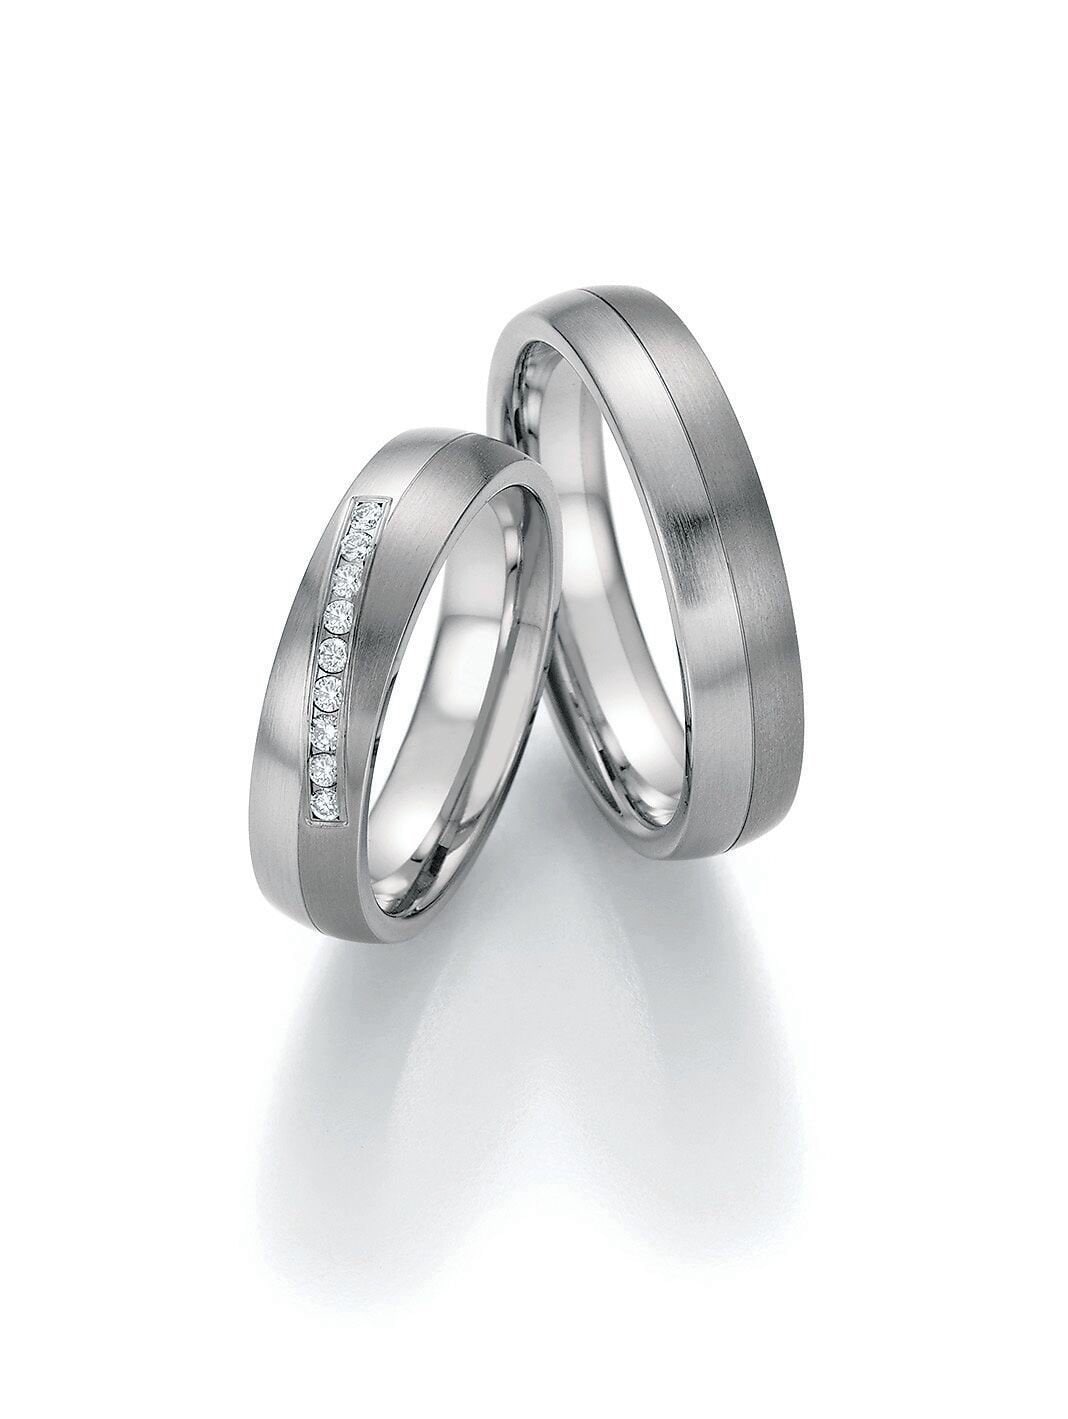 Titan & Steel Mit Diamant Paar Ehering Verlobungsringe Antragsringe Trauring Hochzeitsring Wedding Rings Engagement Diamond von SchmuckDepot